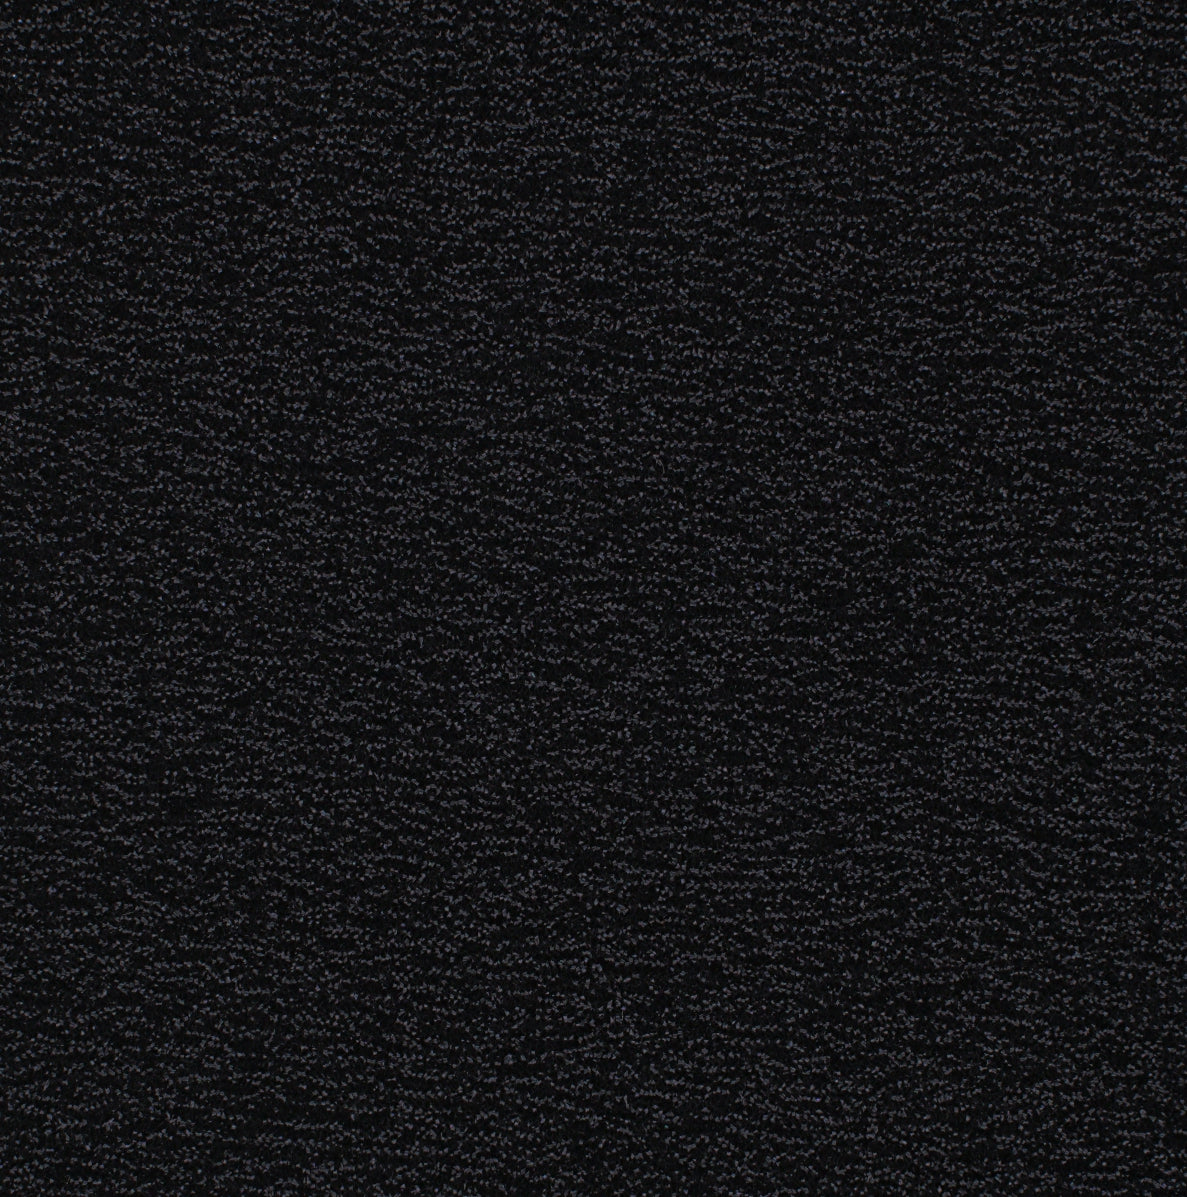 19002-03 Black Metallic Shimmer Jacquard Plain Dyed Blend black blend knit metallic nylon plain dyed polyester spandex Metallic, Jacquard - knit fabric - woven fabric - fabric company - fabric wholesale - fabric b2b - fabric factory - high quality fabric - hong kong fabric - fabric hk - acetate fabric - cotton fabric - linen fabric - metallic fabric - nylon fabric - polyester fabric - spandex fabric - chun wing hing - cwh hk - fabric worldwide ship - 針織布 - 梳織布 - 布料公司- 布料批發 - 香港布料 - 秦榮興